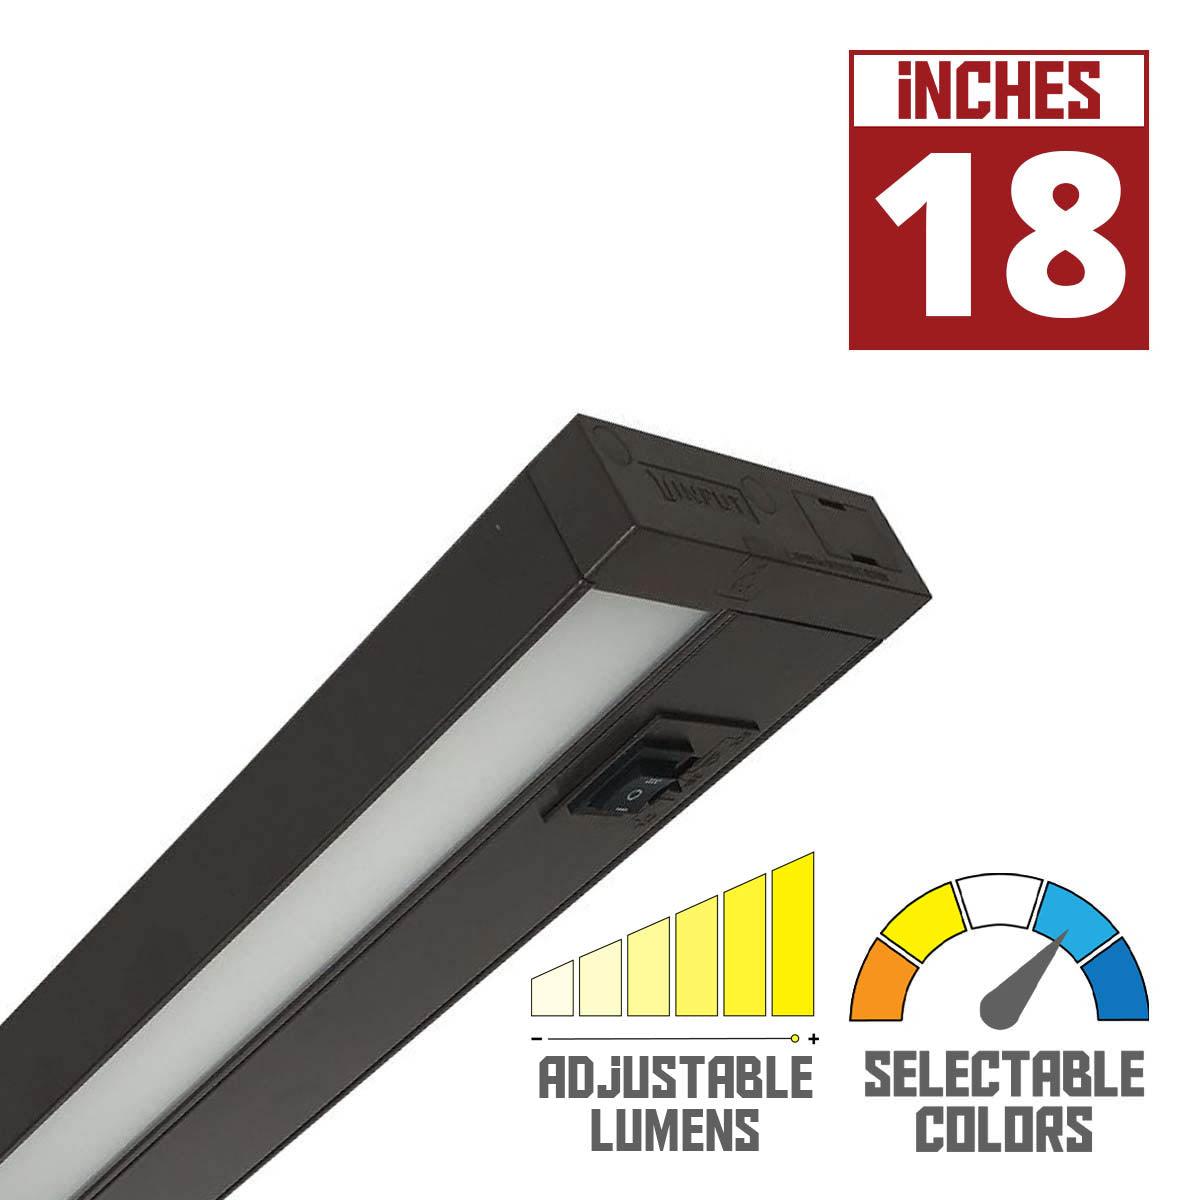 LEDUR TW 18 Inch EdgeLit Under Cabinet LED Light, Linkable, Adjustable Lumens 275/ 475 Lm, Field Selectable CCT 2700K to 5000K, 120V